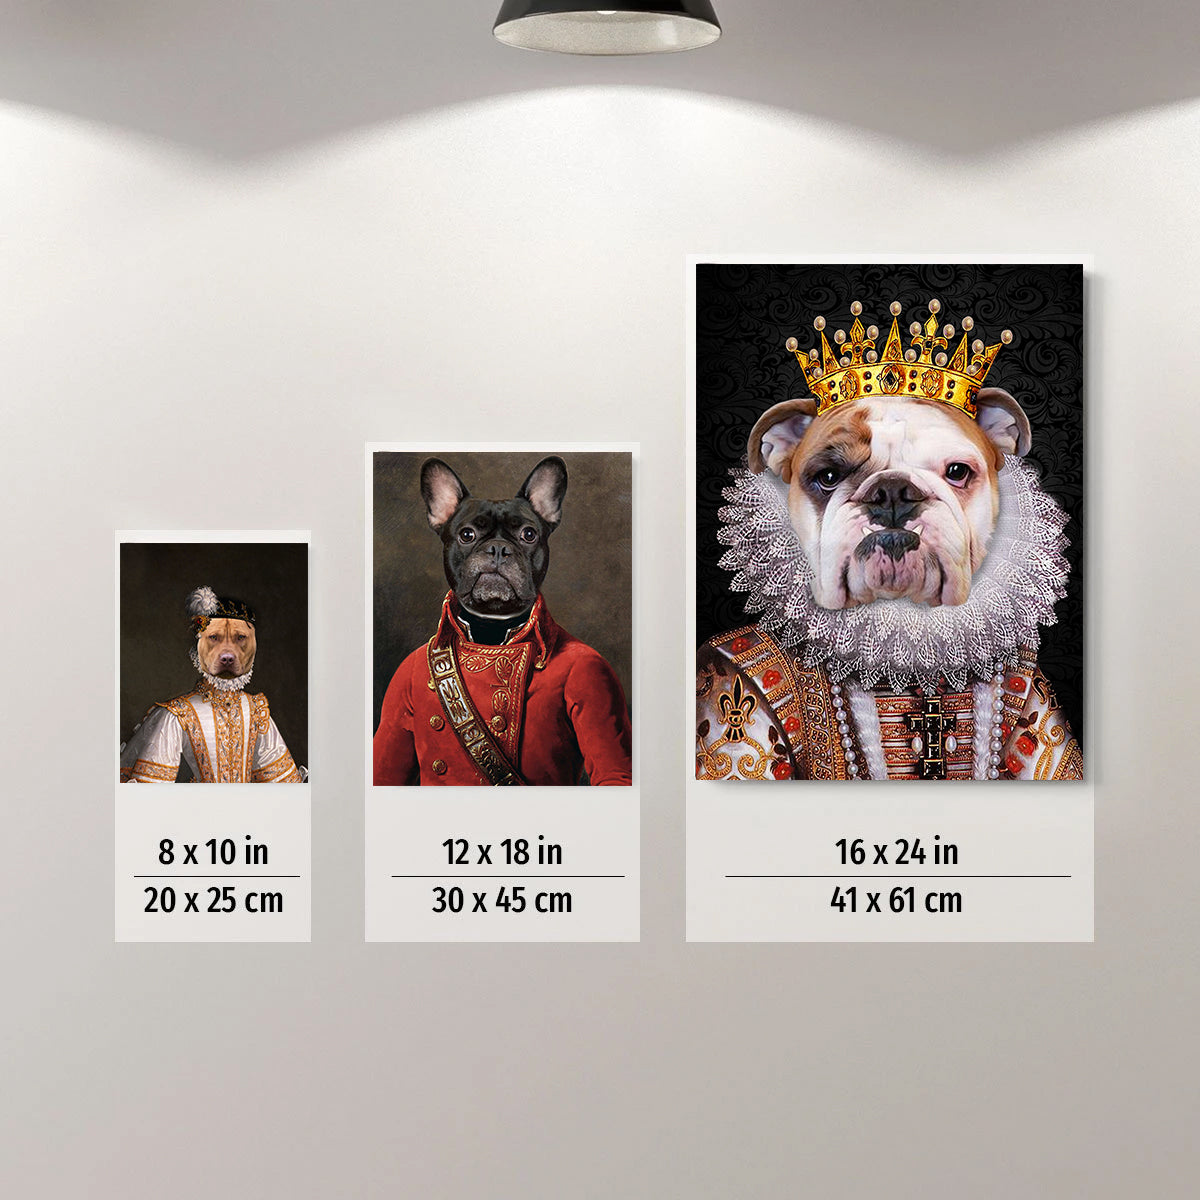 The Philosopher Custom Pet Portrait Poster - Noble Pawtrait